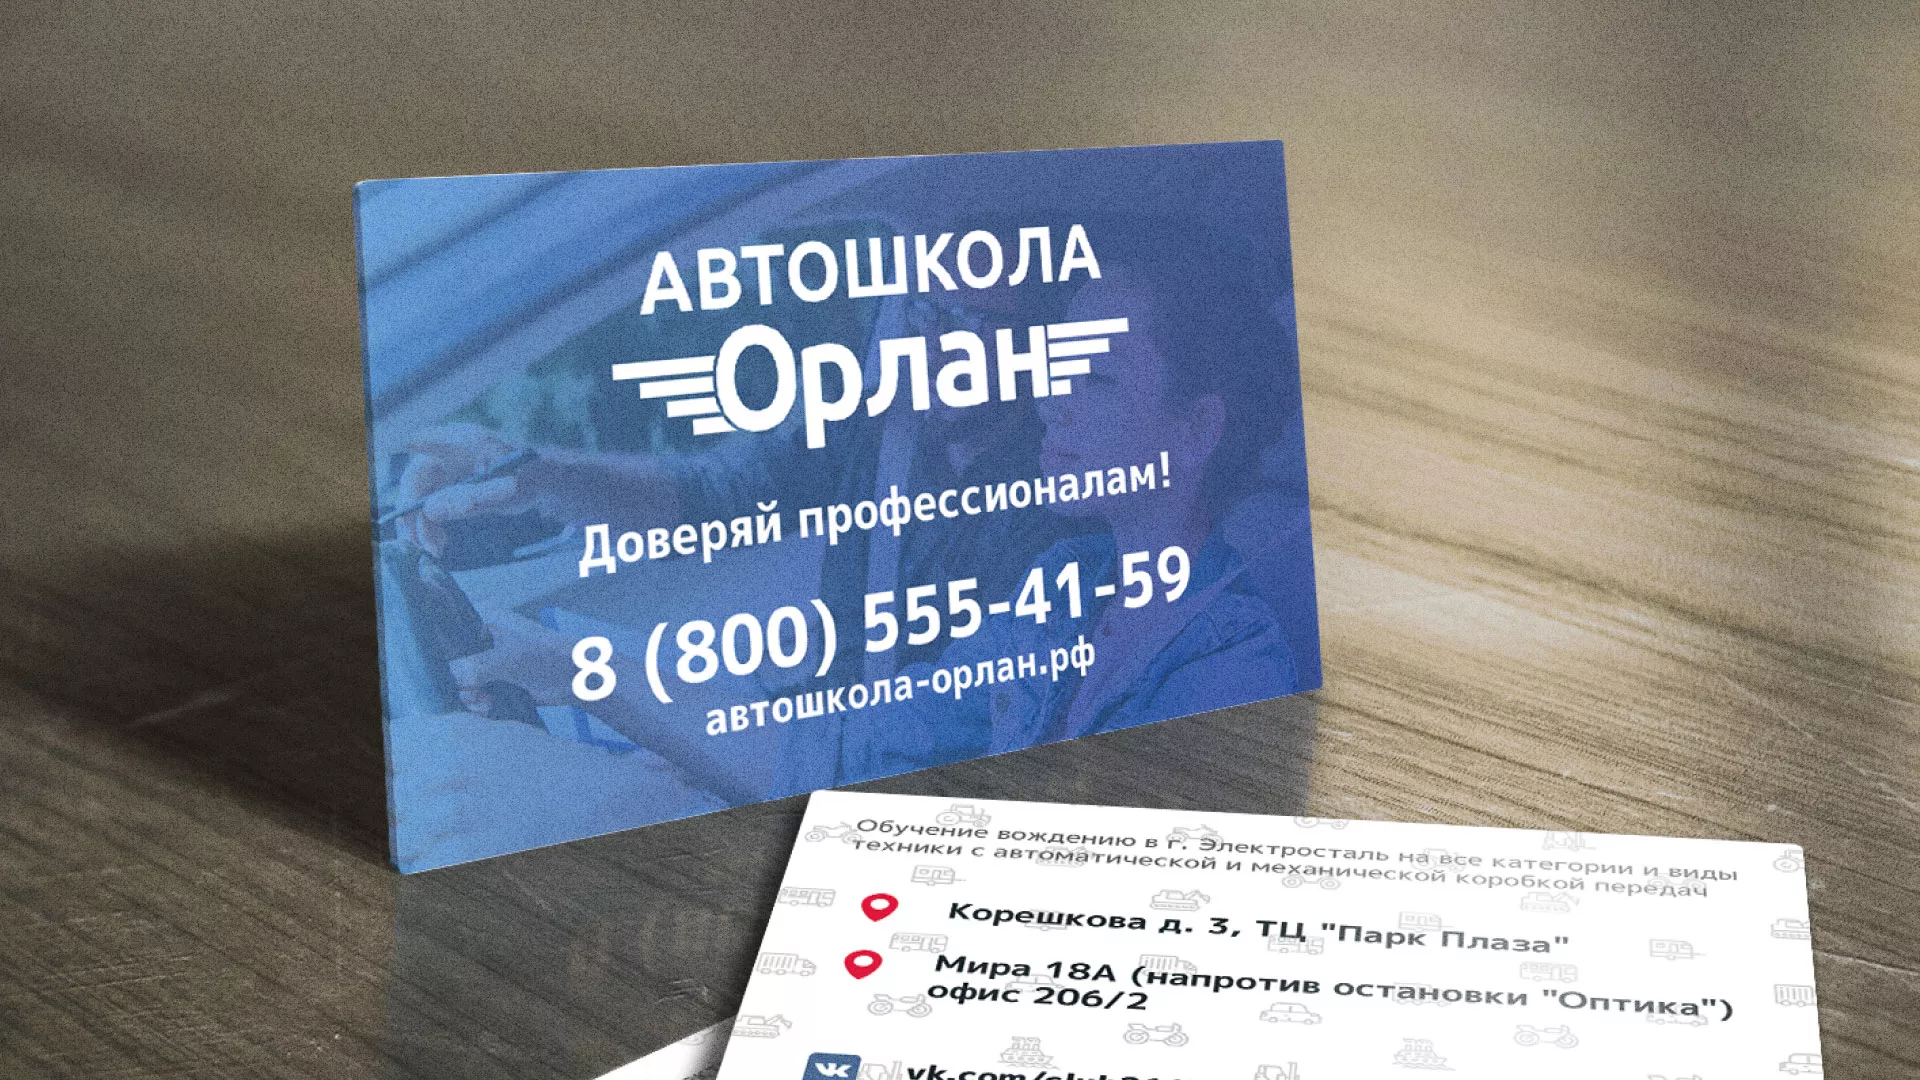 Дизайн рекламных визиток для автошколы «Орлан» в Костомукше